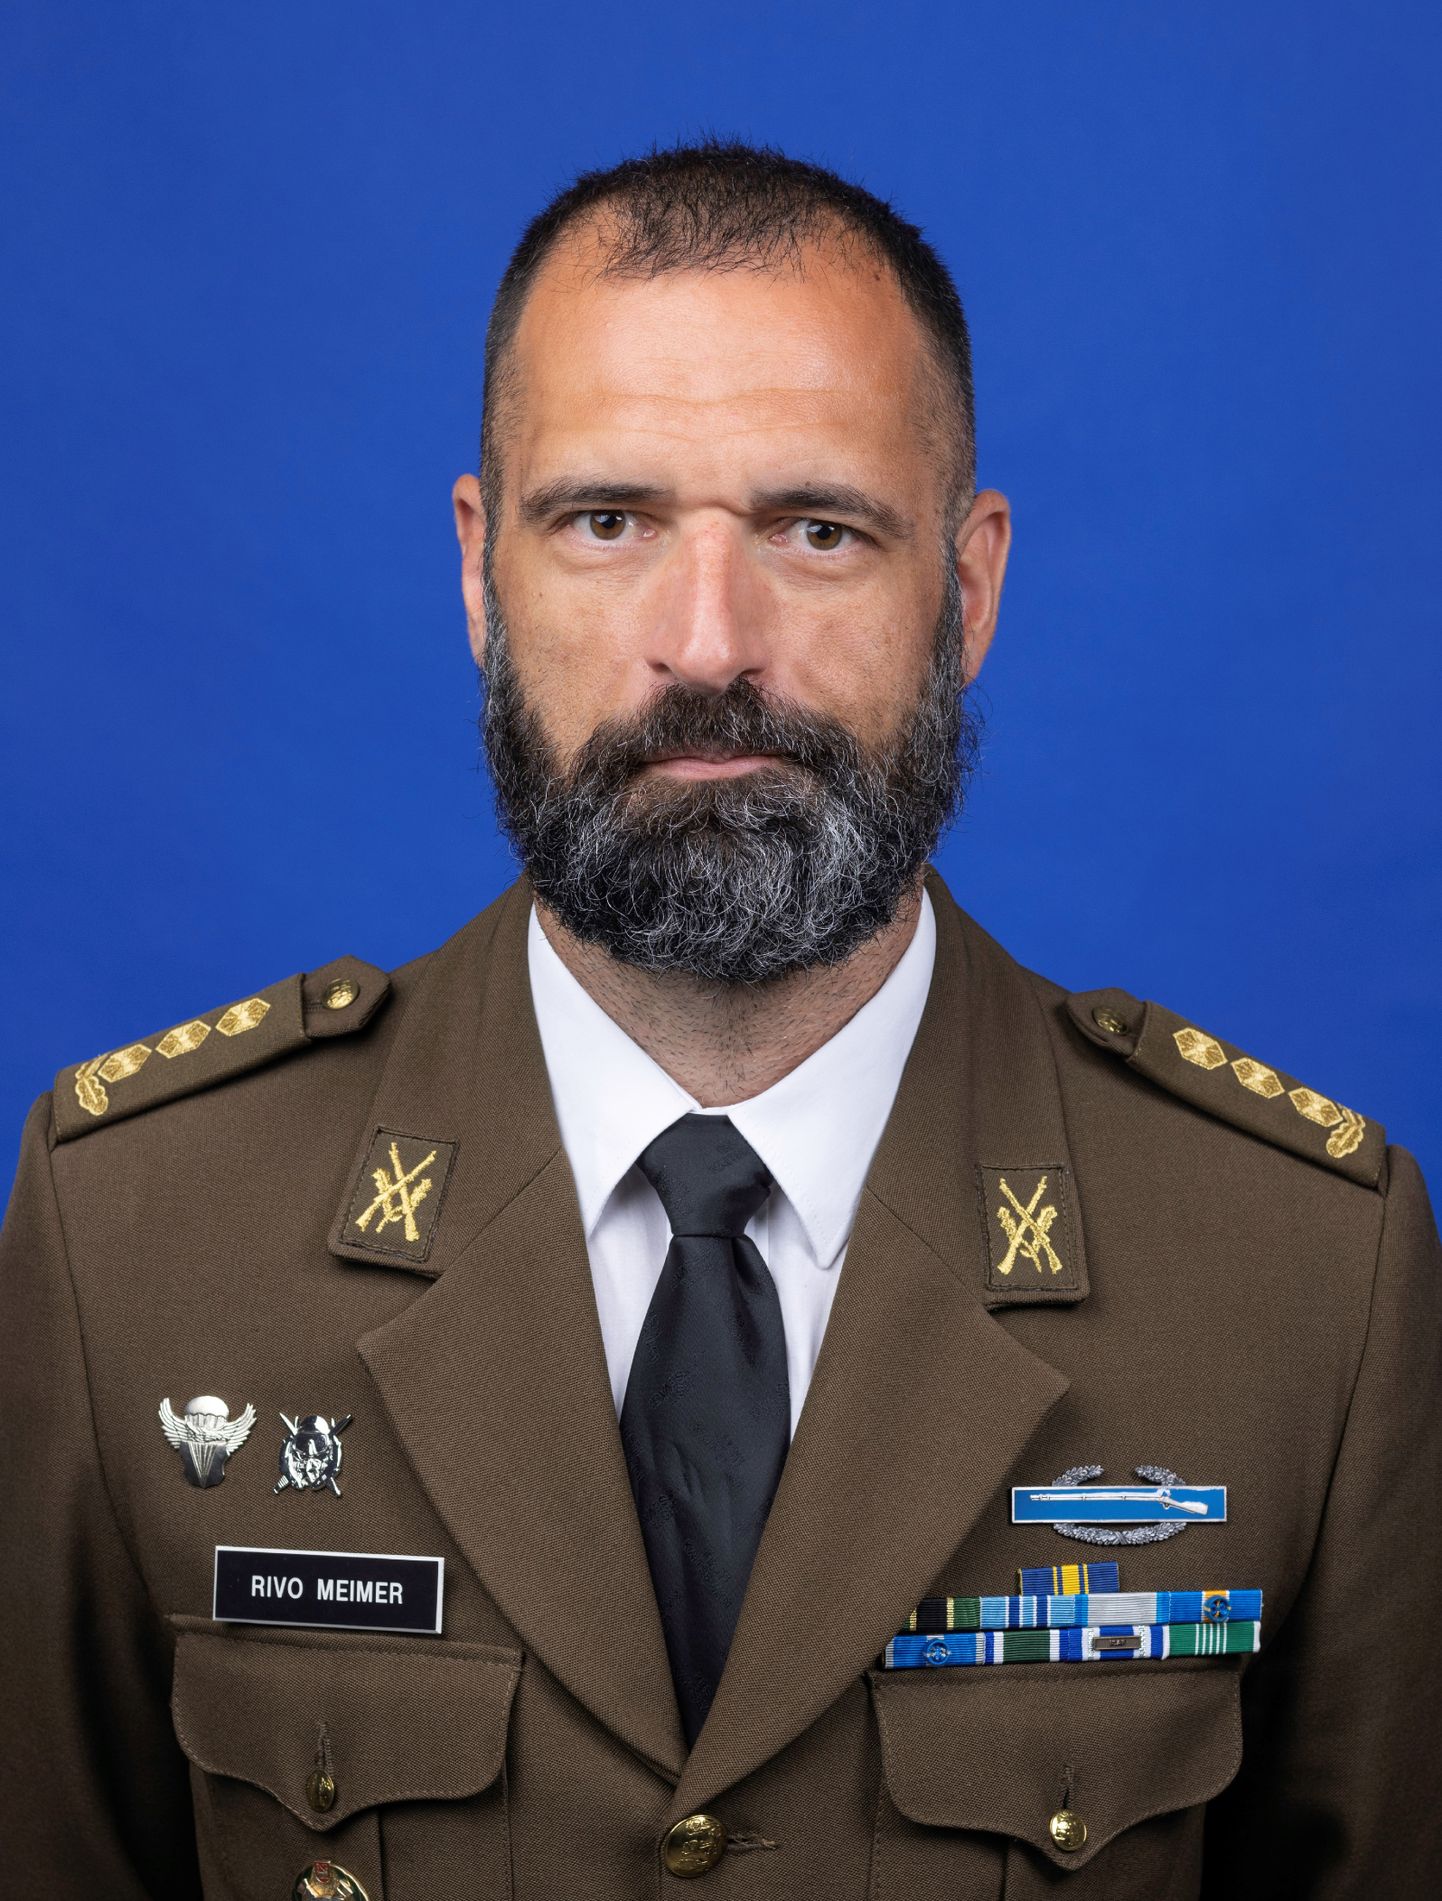 Kolonel Rivo Meimer